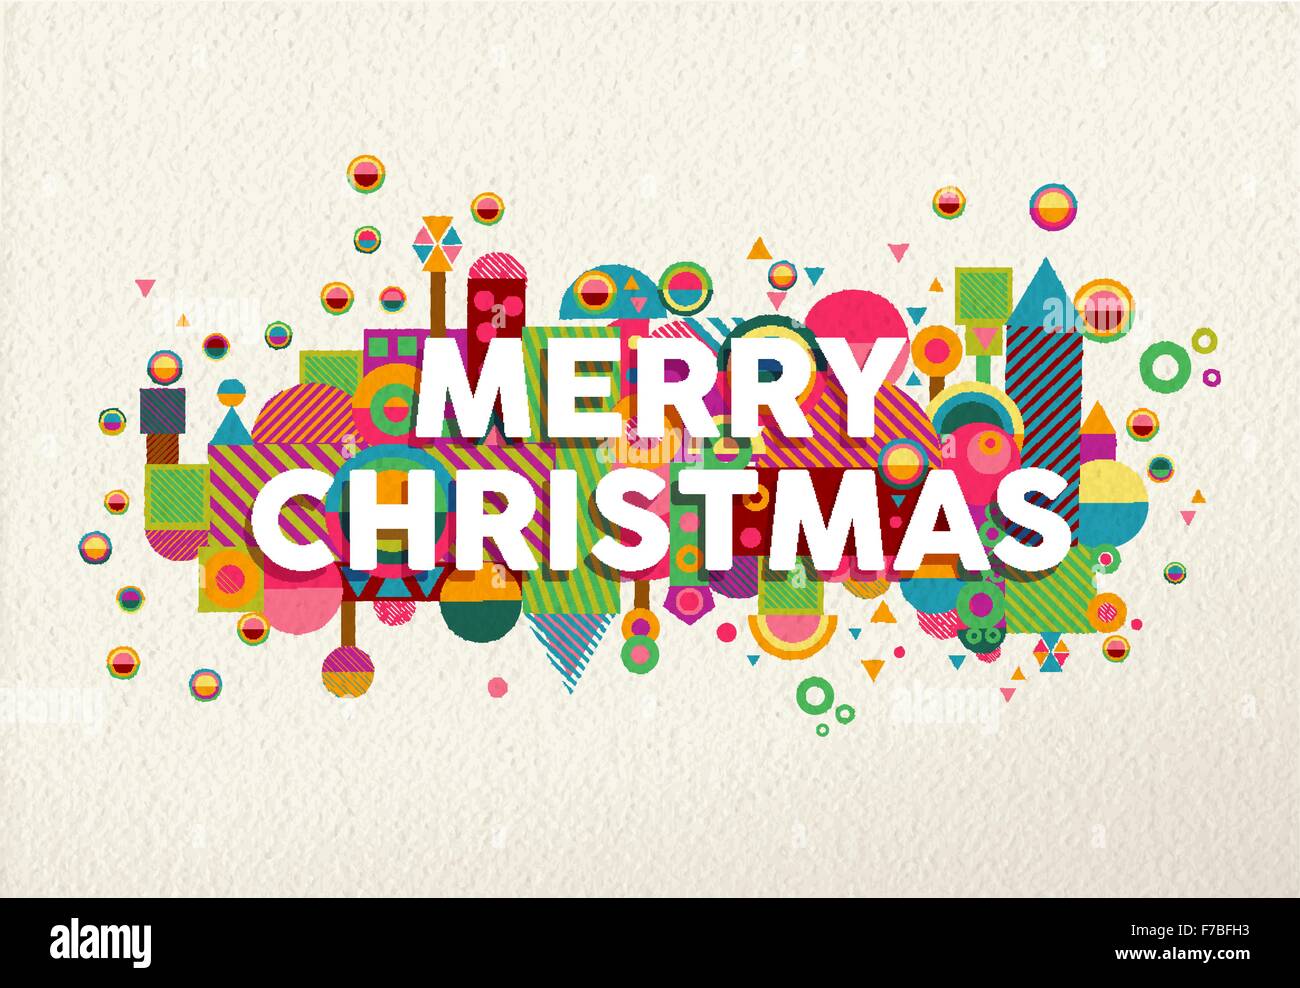 Feliz Navidad colores vibrantes póster con divertidas formas de geometría en la composición del entorno ilustración. Ideal para la felicitación de navidad Ilustración del Vector